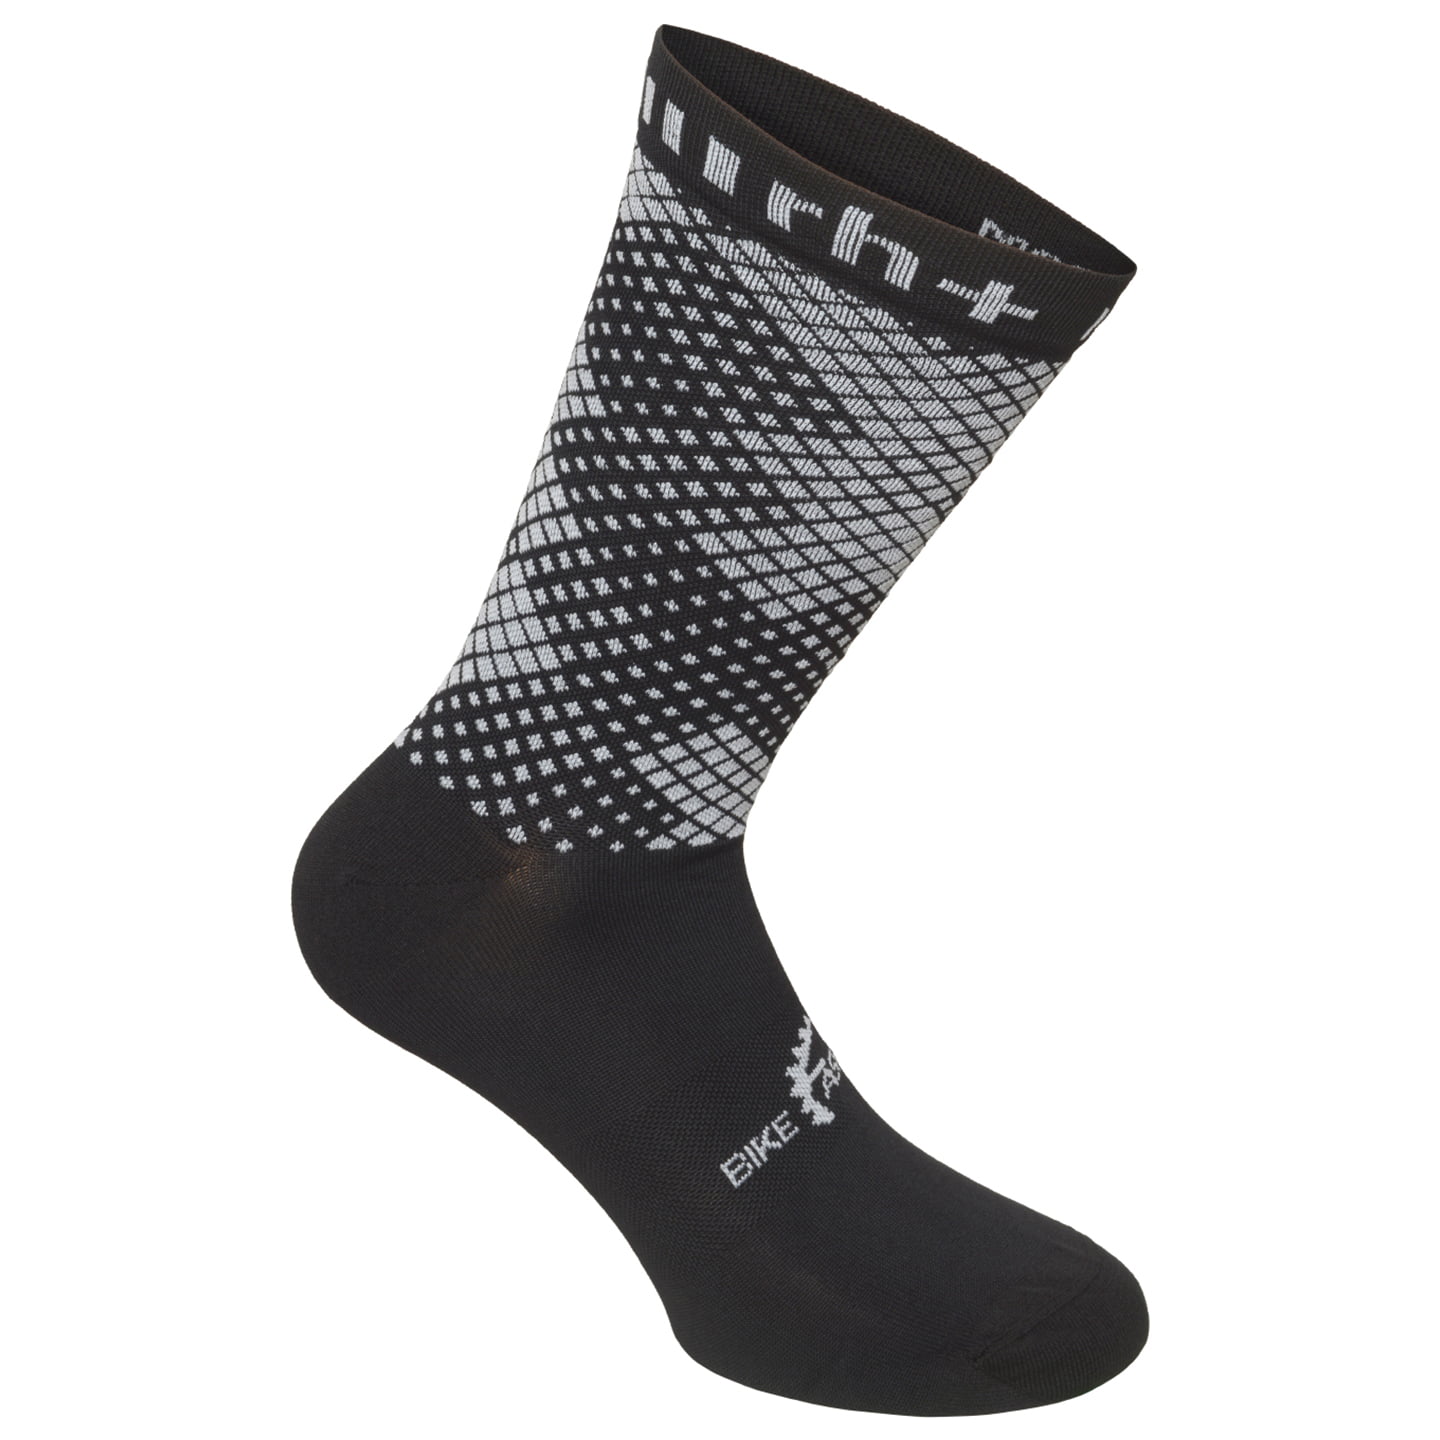 RH+ Fashion Lab 20 Cycling Socks Cycling Socks, size S-M, MTB socks, Cycling clothing